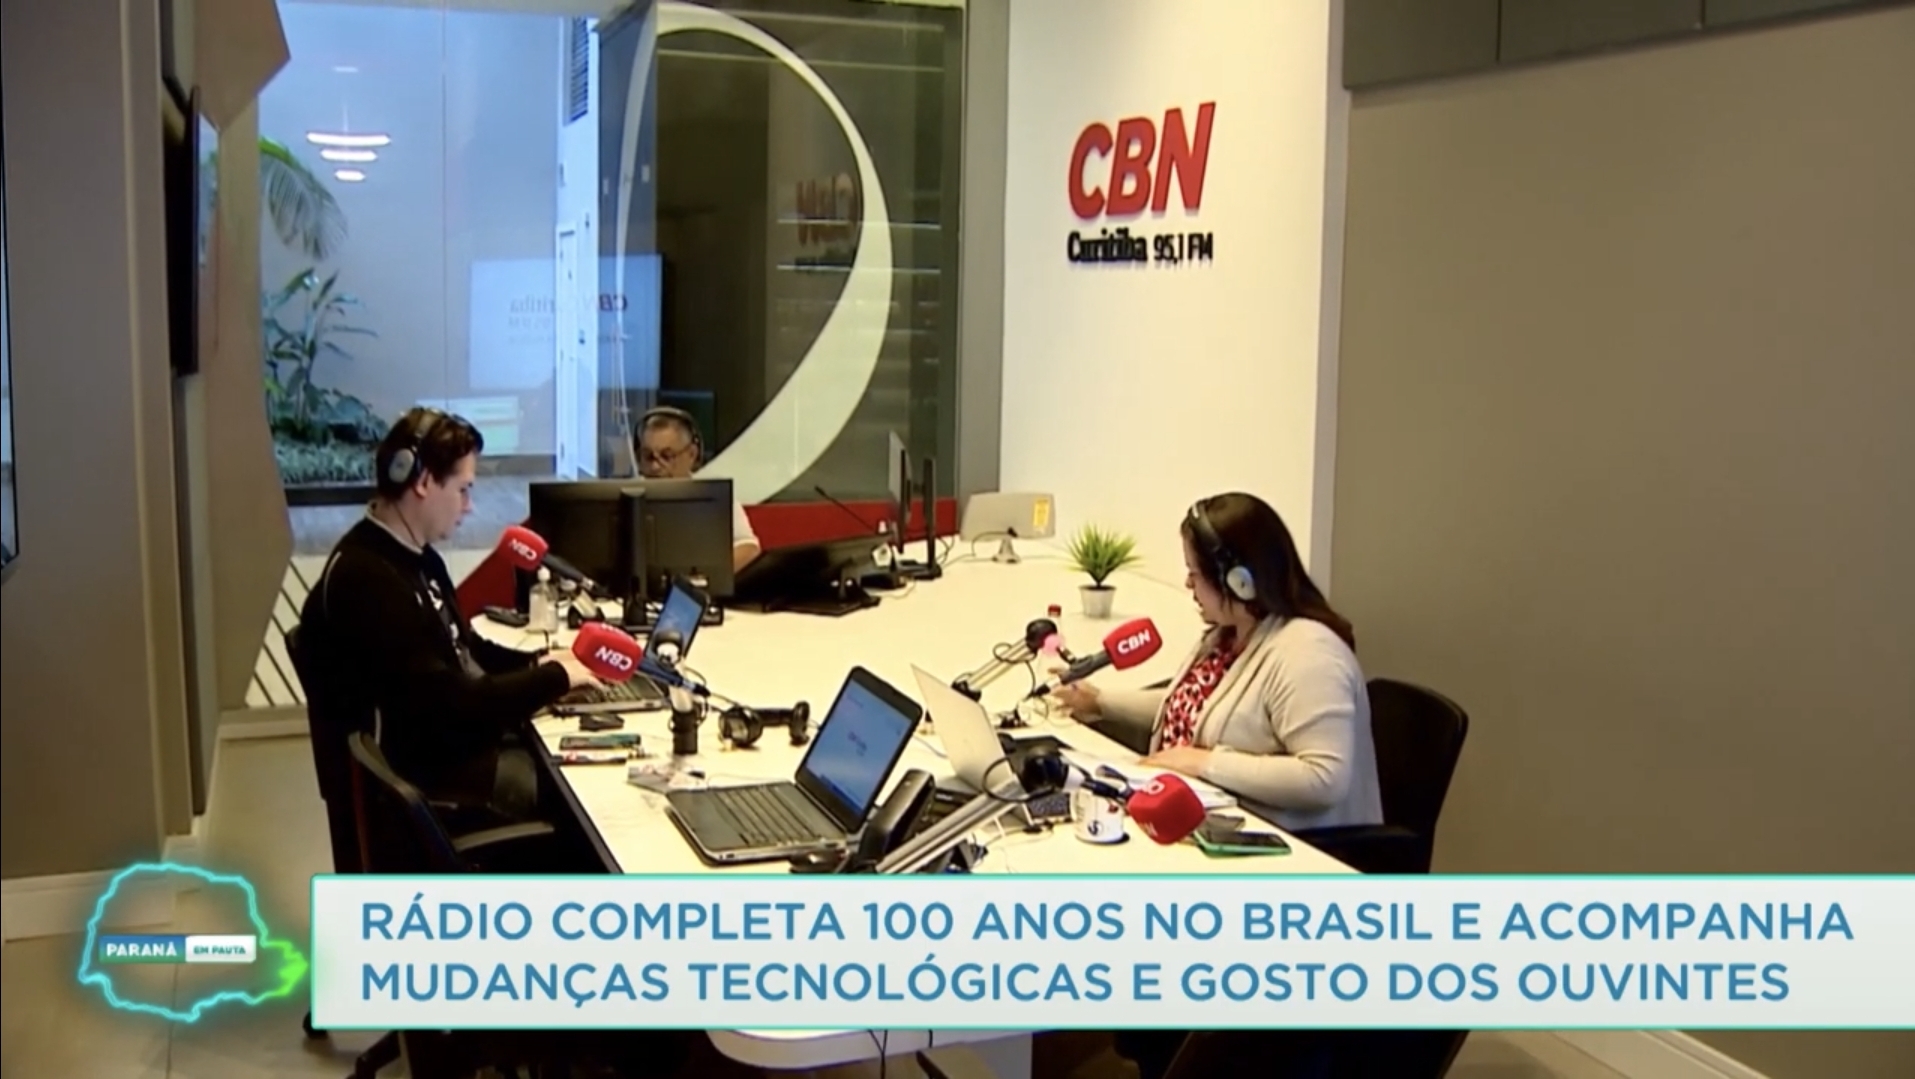 Cbn Curitiba Ilustra Reportagem Da Tv Educativa Do Paraná Sobre Os 100 Anos Do Rádio Cbn 6353